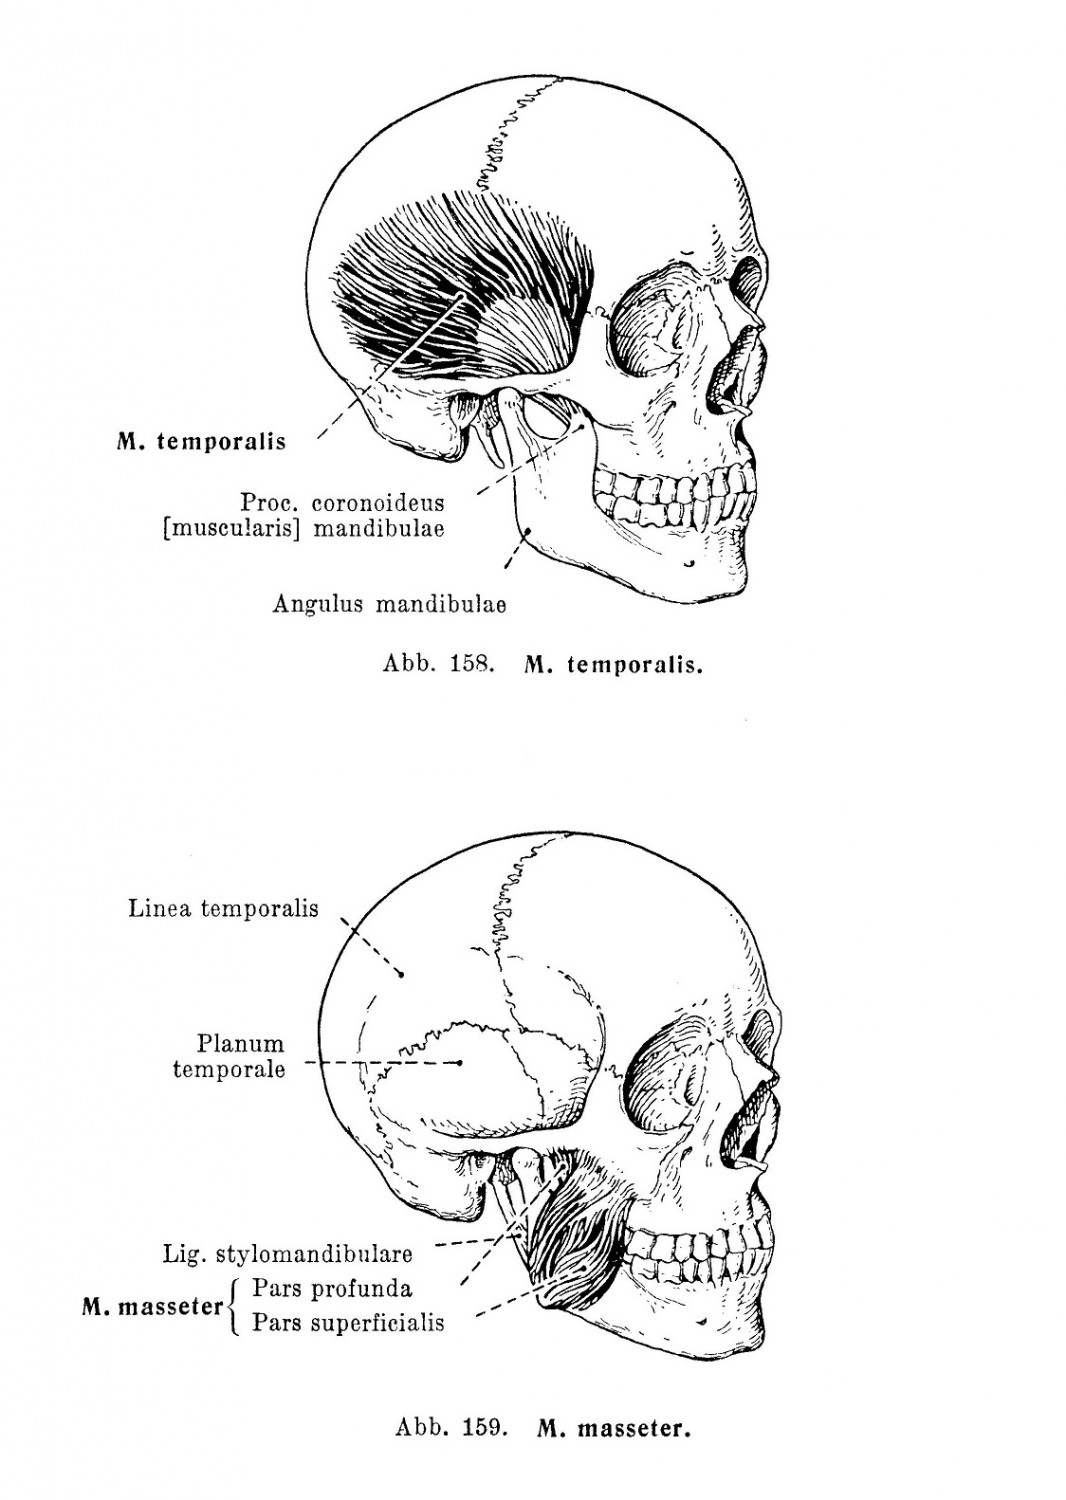 M. temporalis und M. masseter